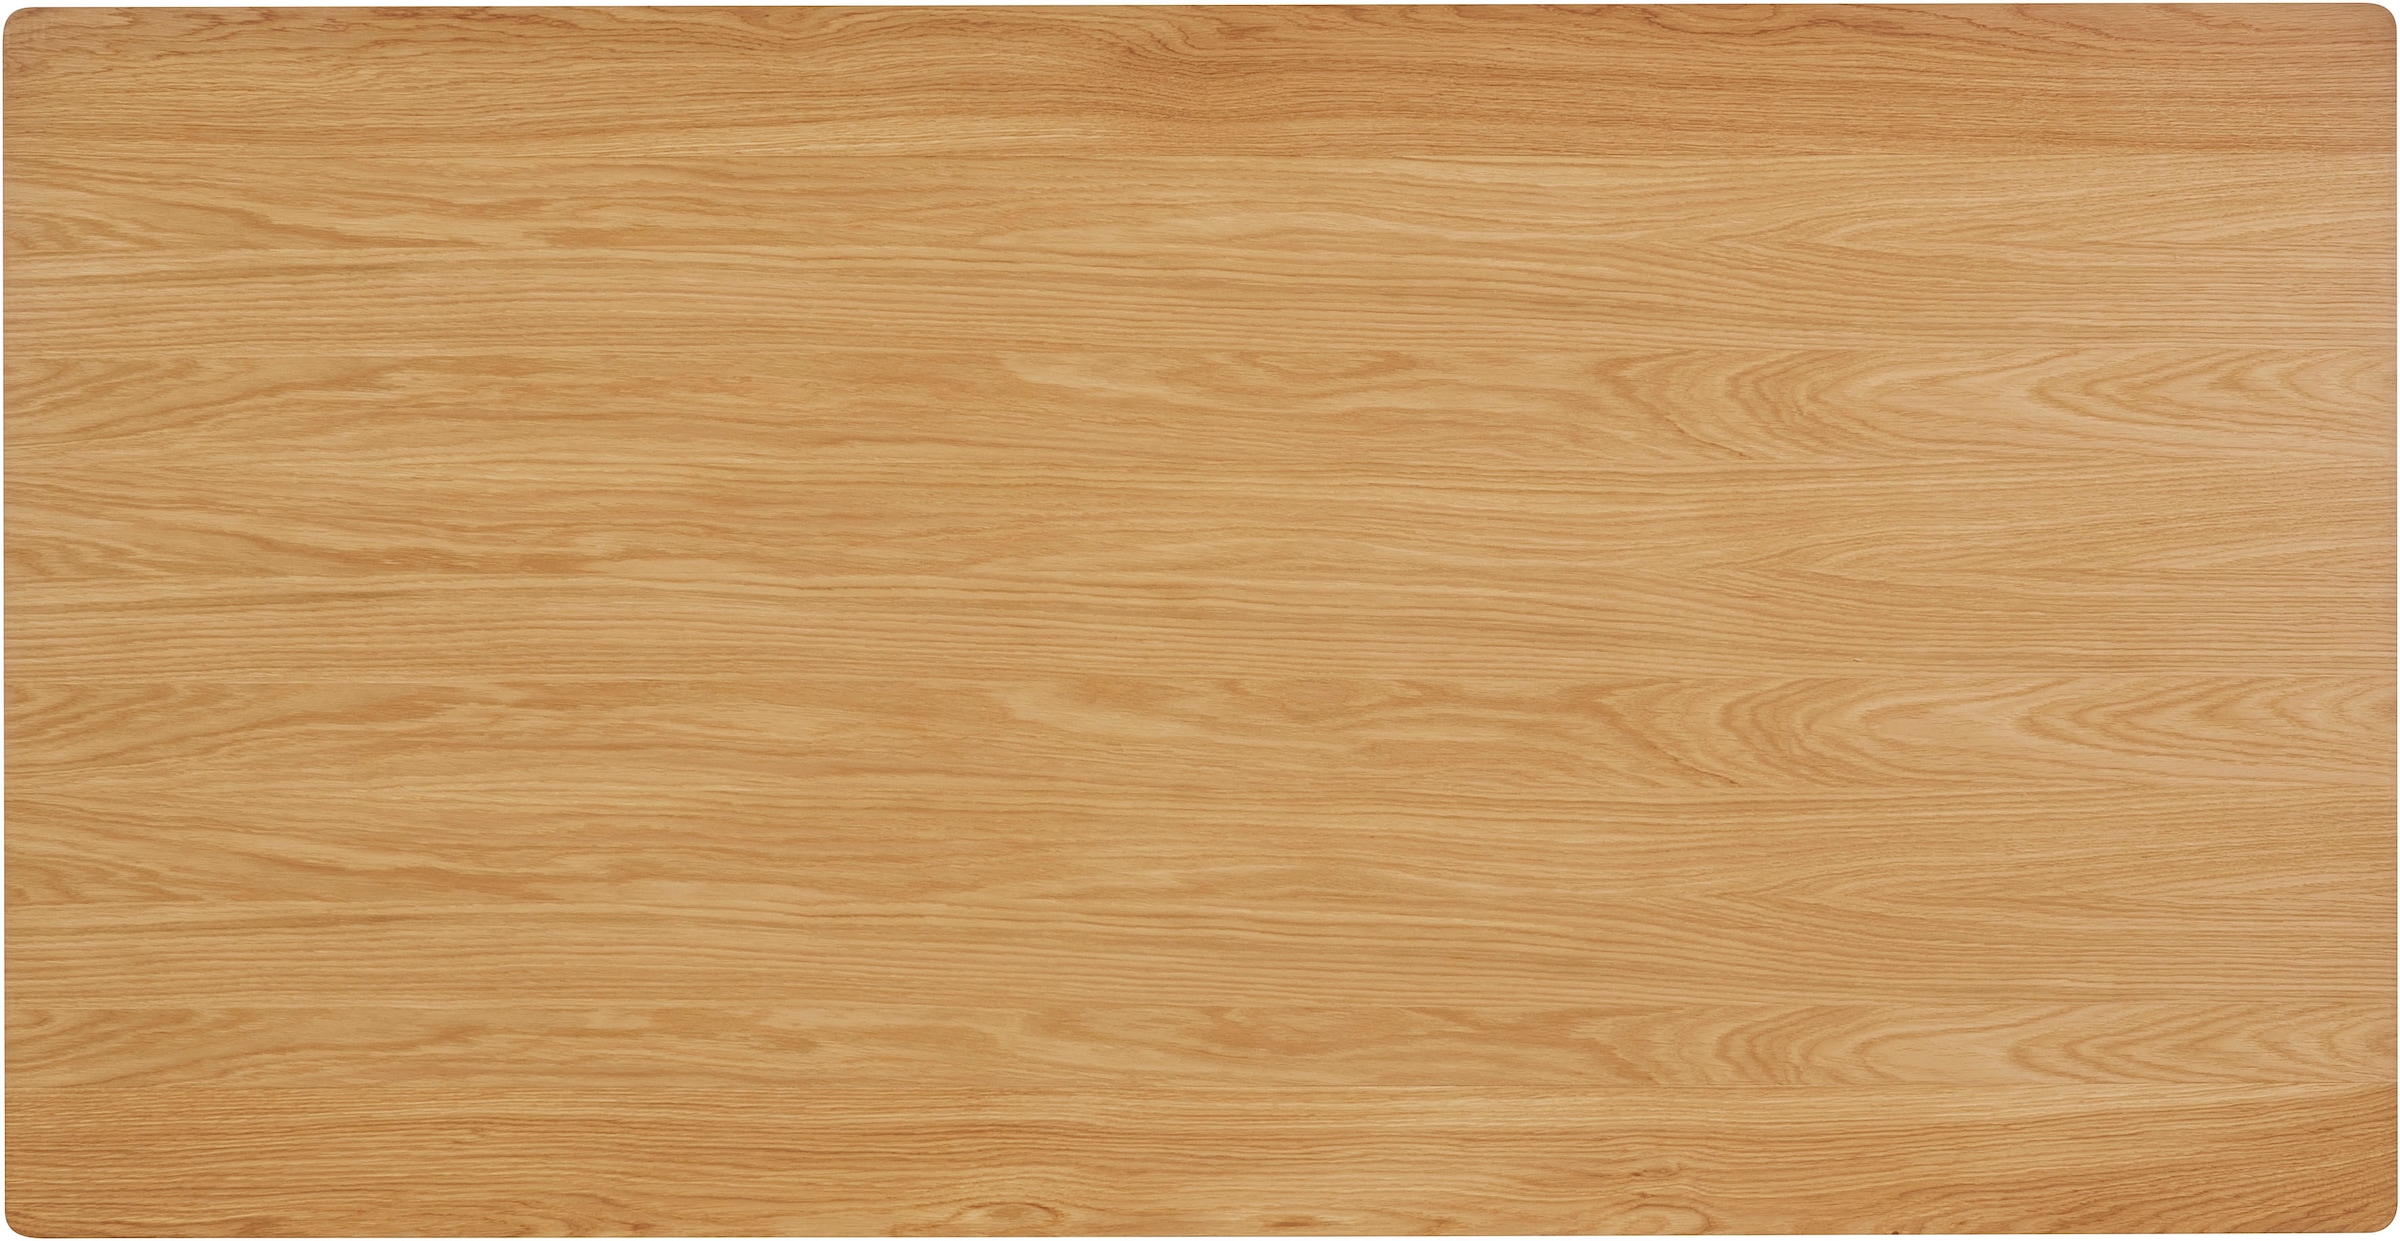 GOODproduct Esstisch »Flemming«, Massivholz Eiche, 175 cm oder 225 cm, elegant gewölbte Tischplatte